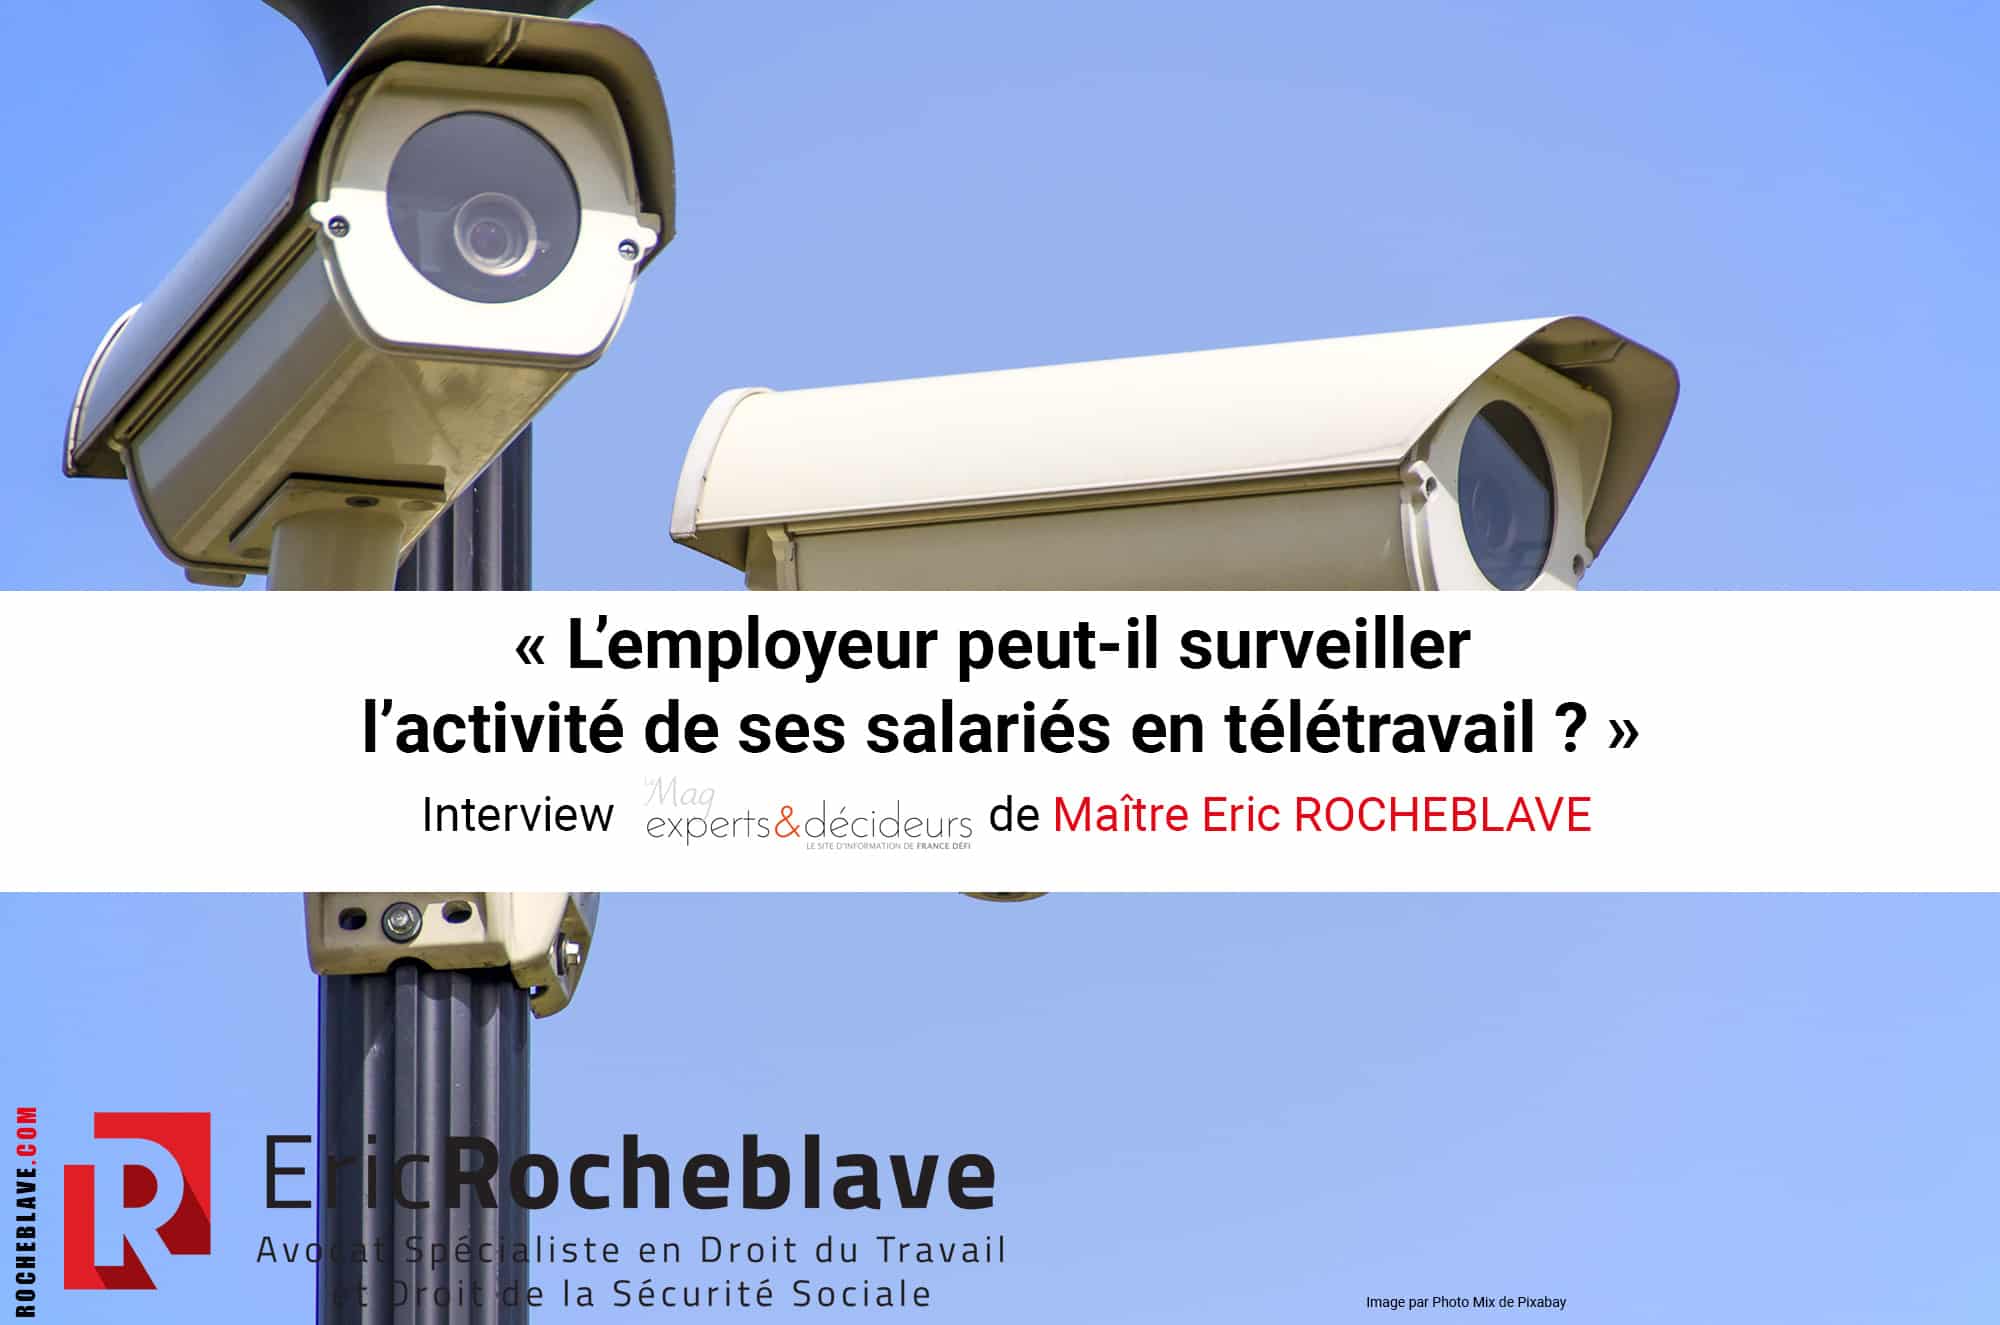 « L’employeur peut-il surveiller l’activité de ses salariés en télétravail ? » Interview experts&décideurs de Maître Eric ROCHEBLAVE